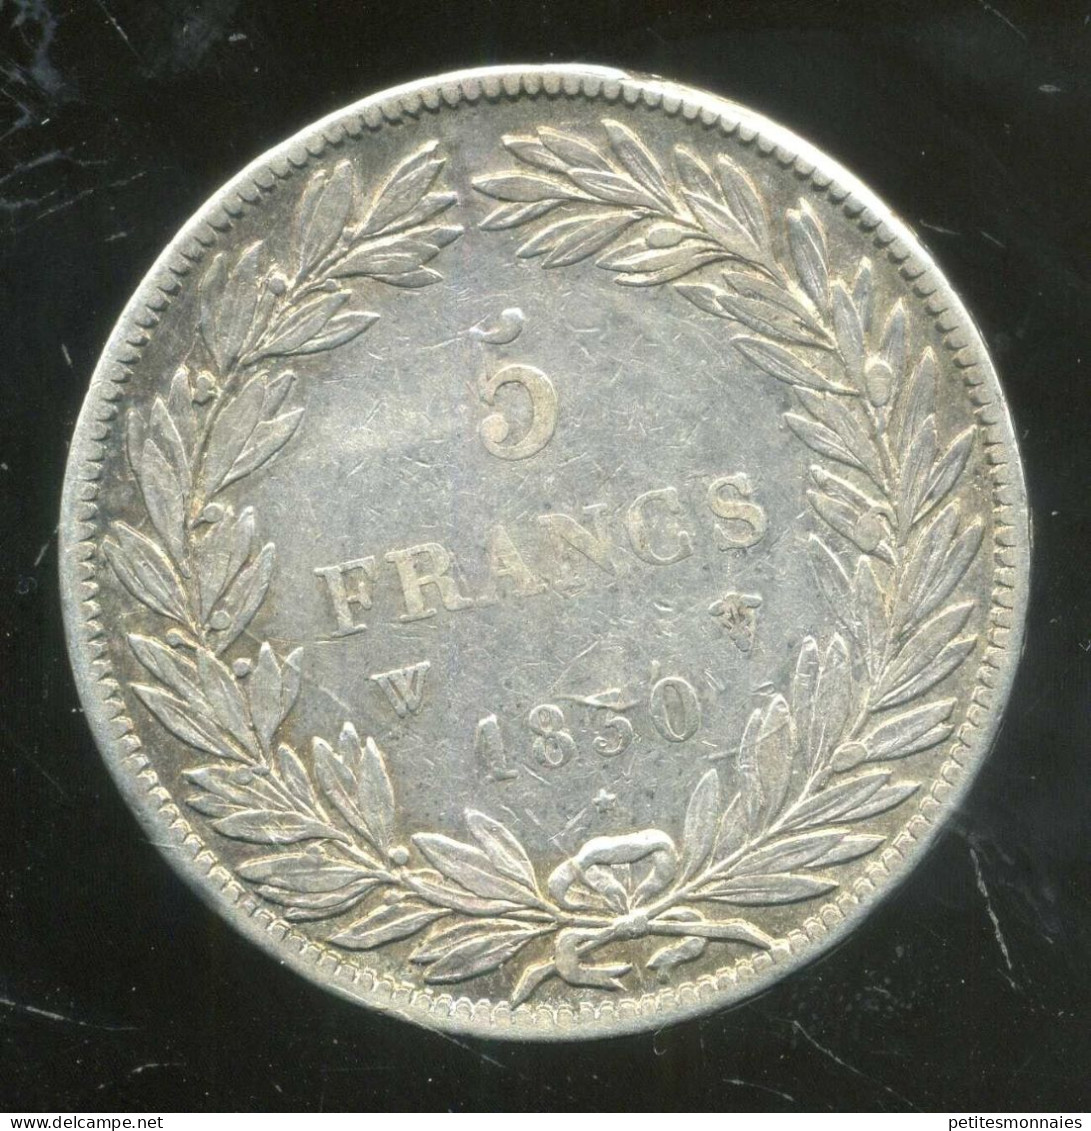 5 Francs 1830 W LOUIS PHILIPPE I ( Téte Nue Sans Le I ) ( TB/TTB ) ARGENT - 5 Francs